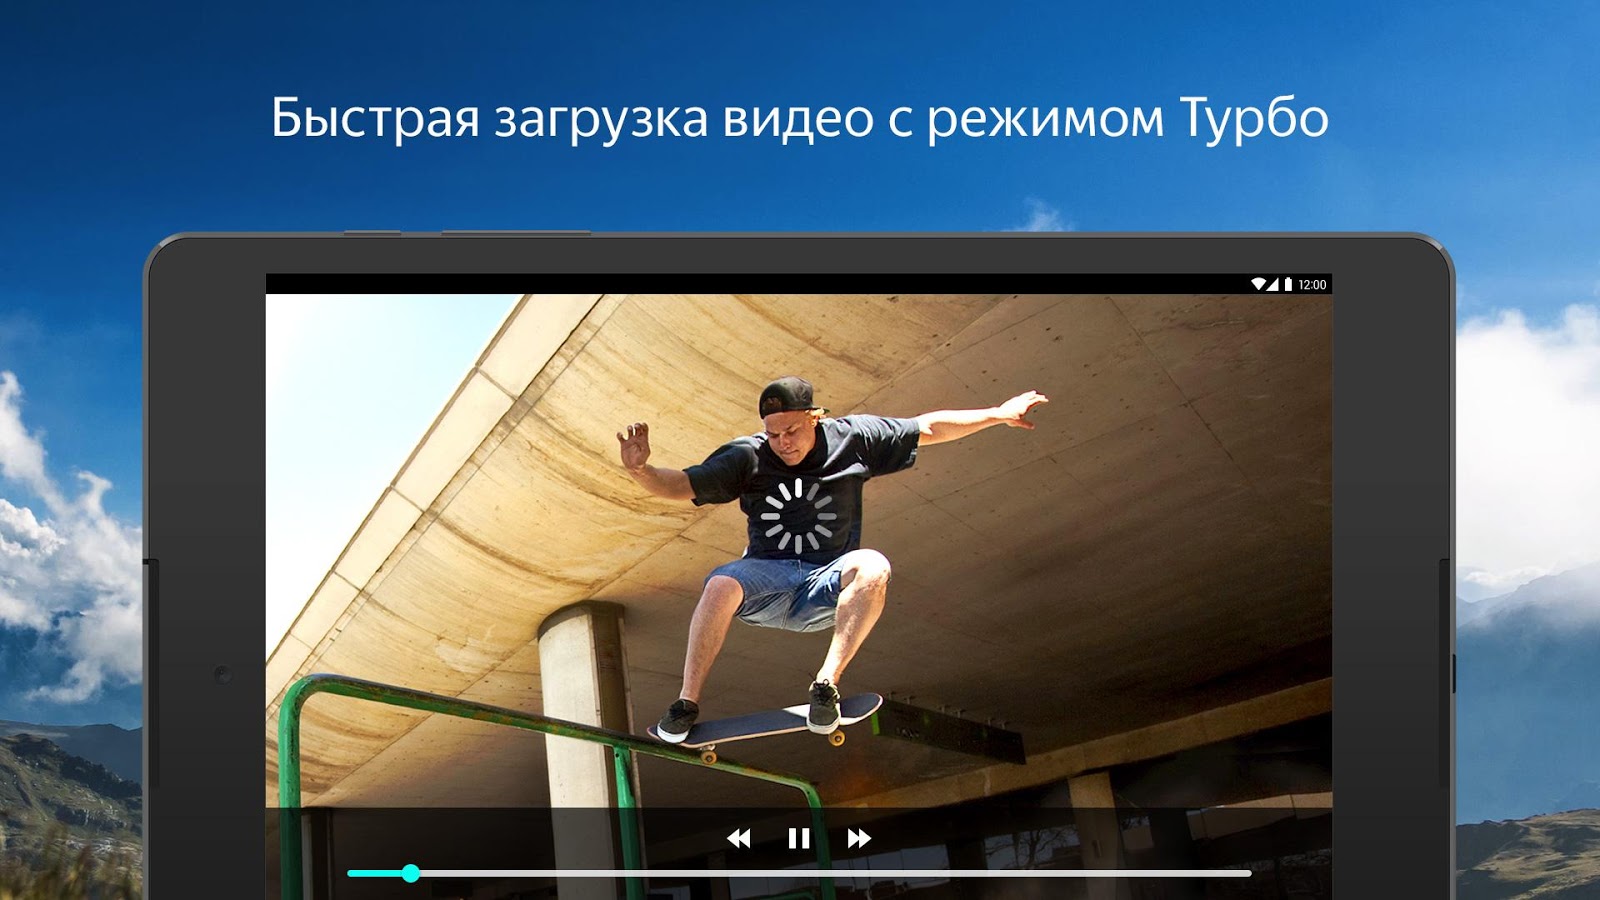 Видеохостинг от Яндекса.